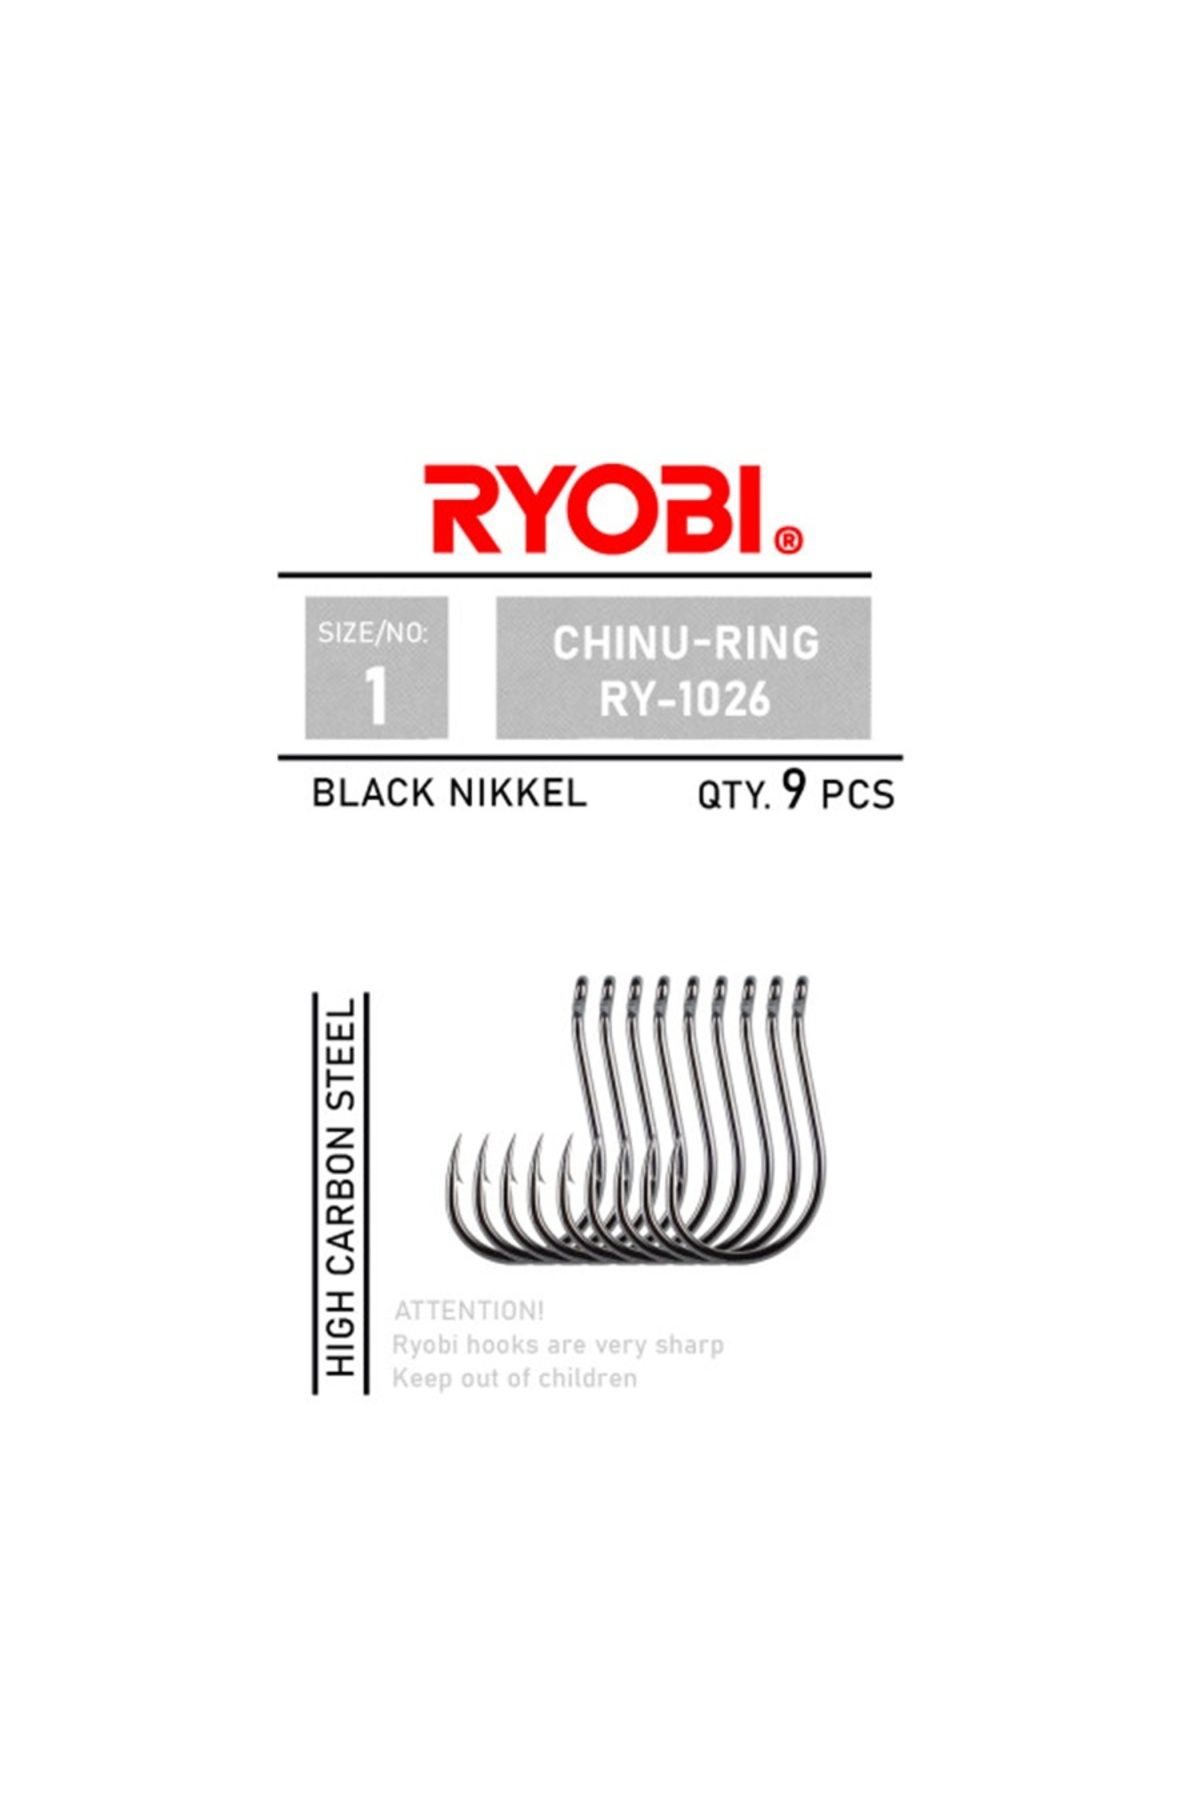 Ryobi Chinu-Ring RY-1026 Black Nickel Olta İğnesi No:1